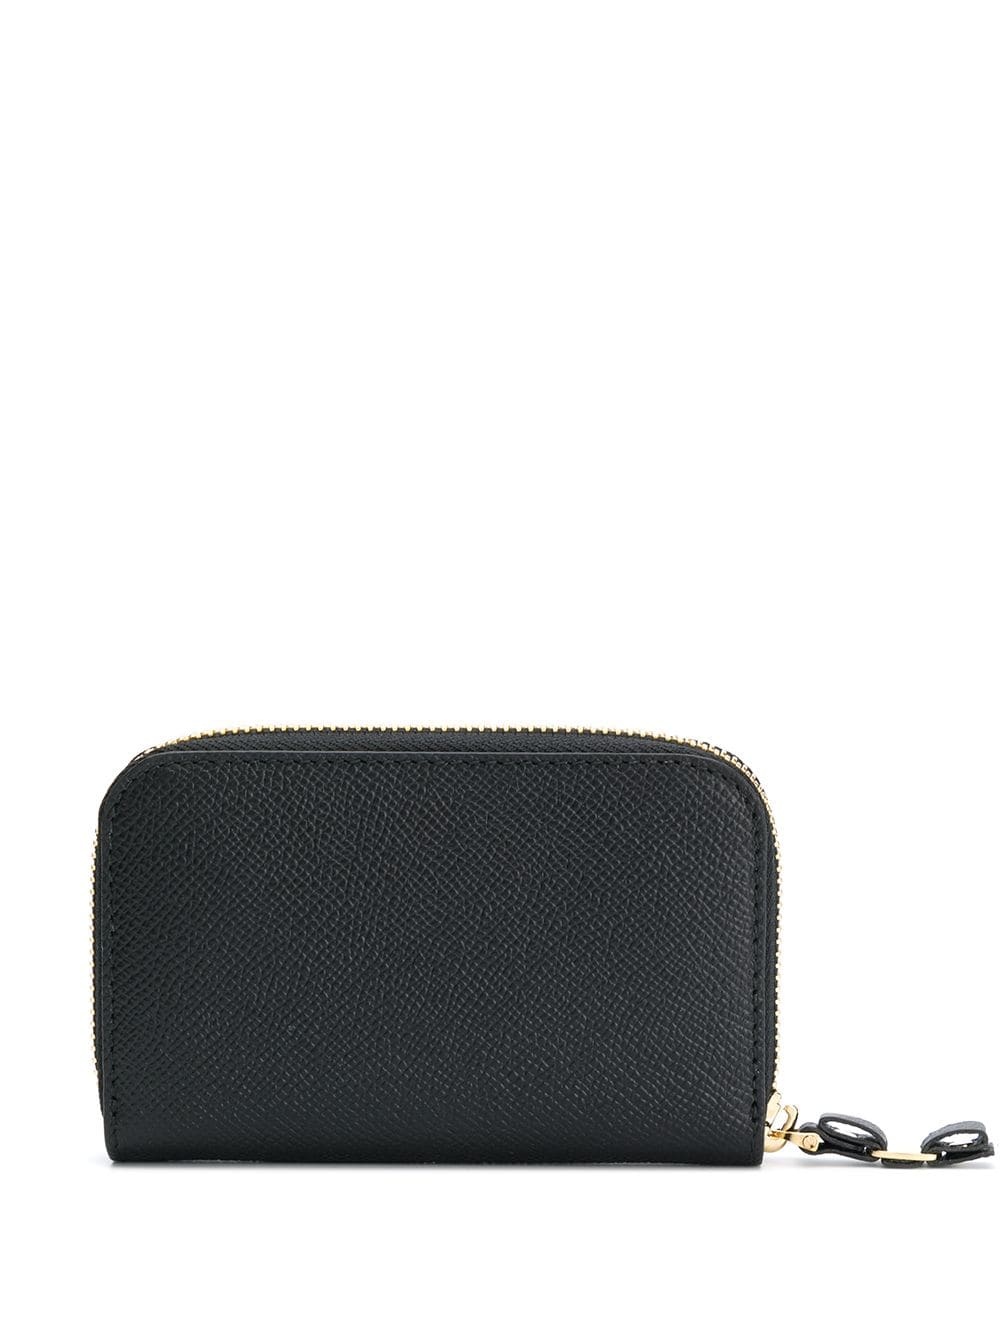 bow detail purse - 2